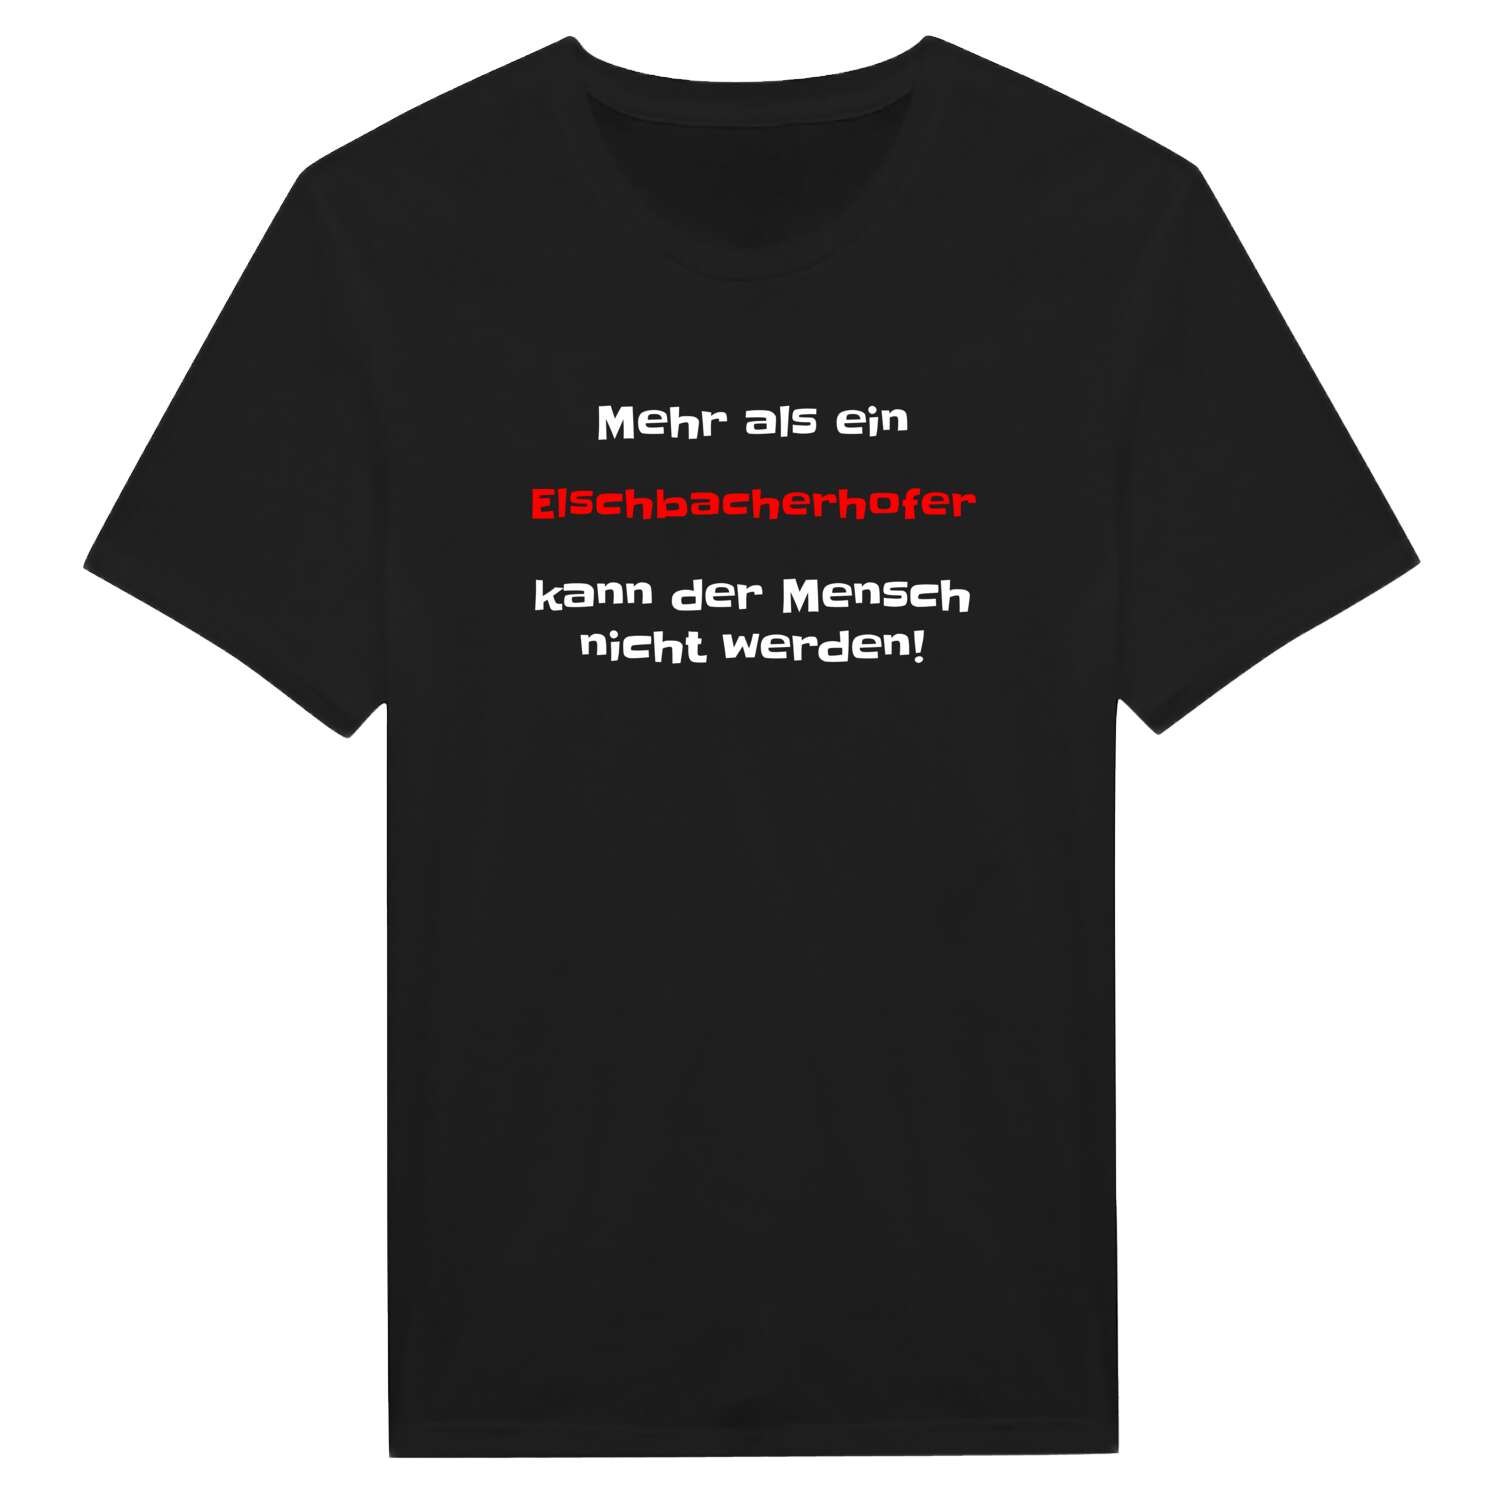 Elschbacherhof T-Shirt »Mehr als ein«